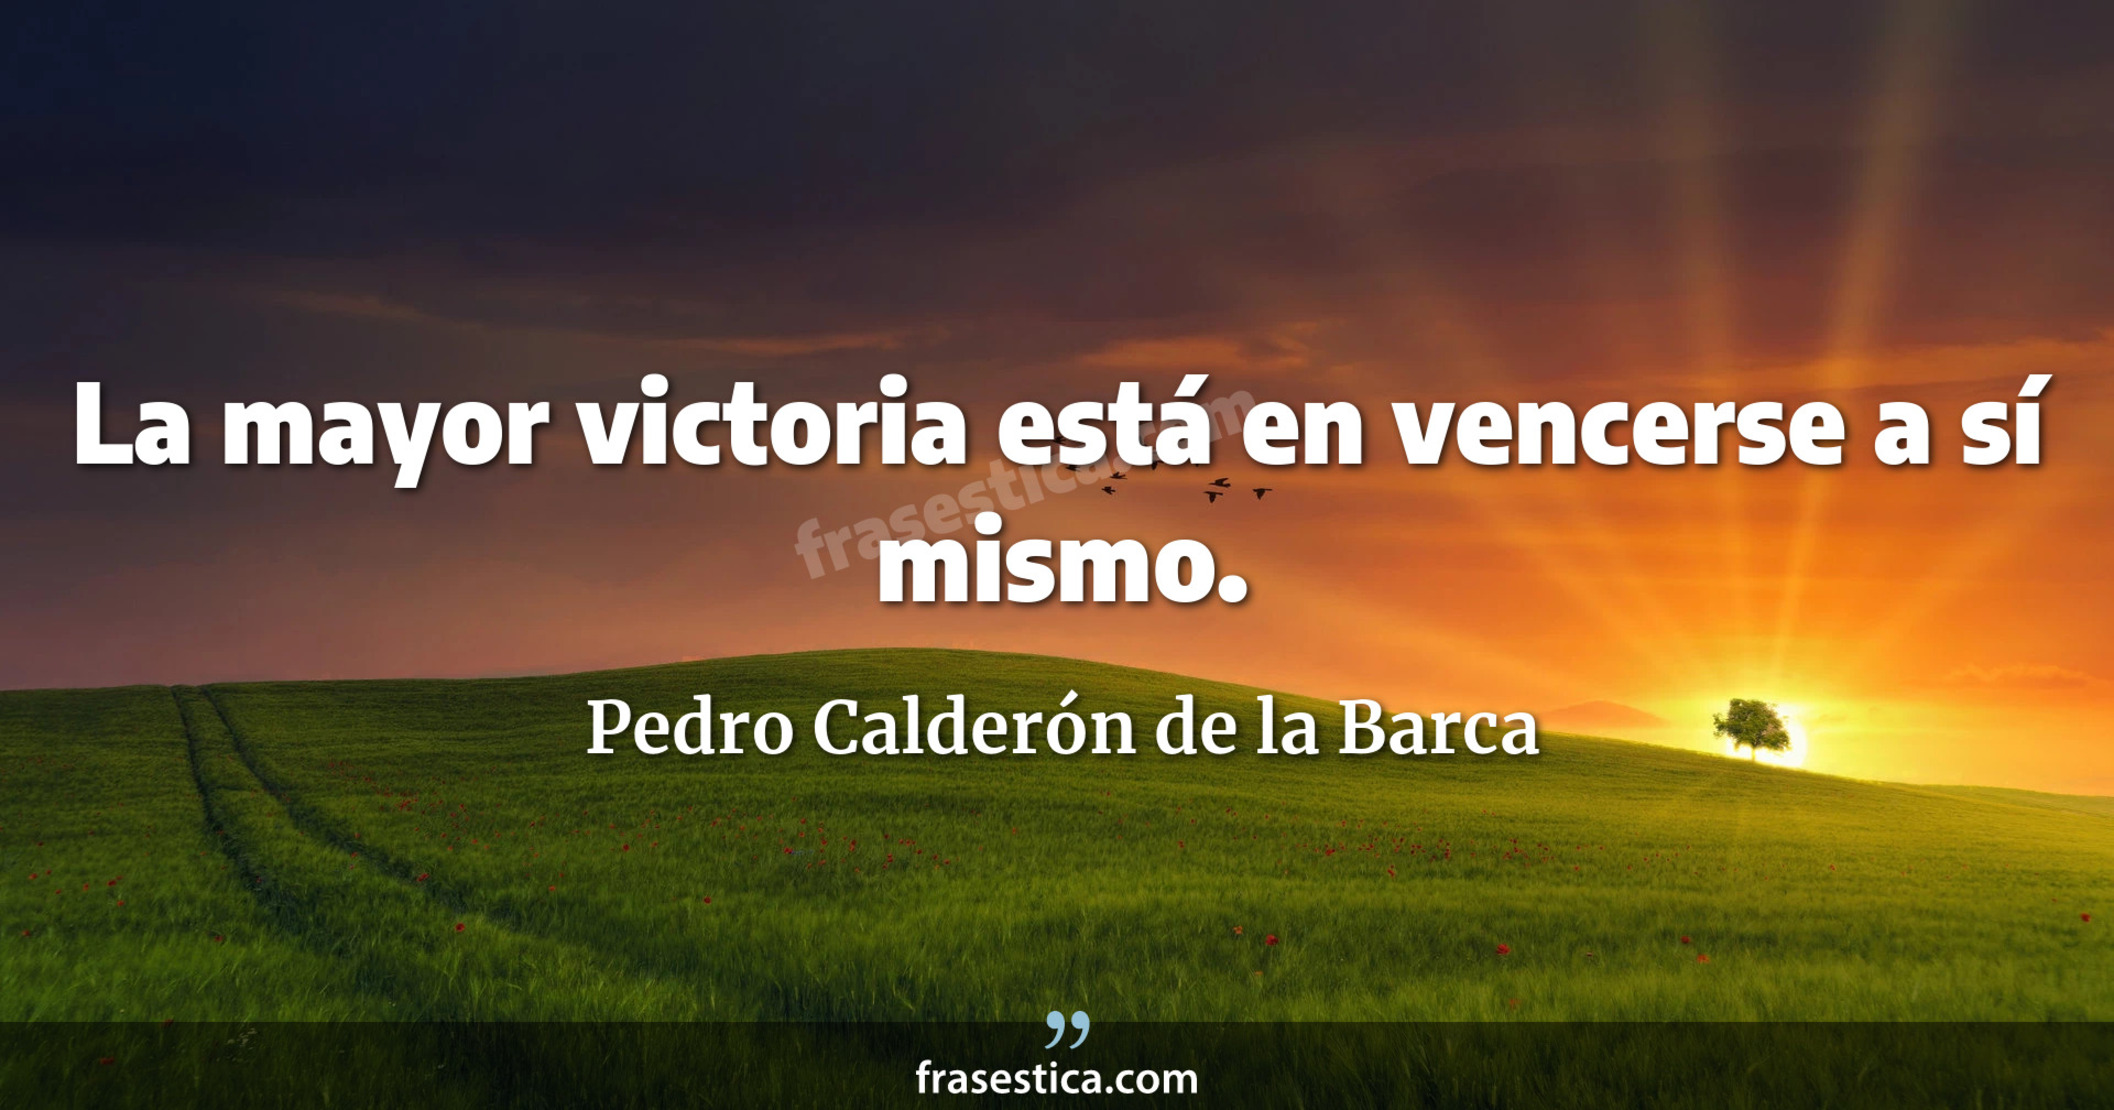 La mayor victoria está en vencerse a sí mismo. - Pedro Calderón de la Barca